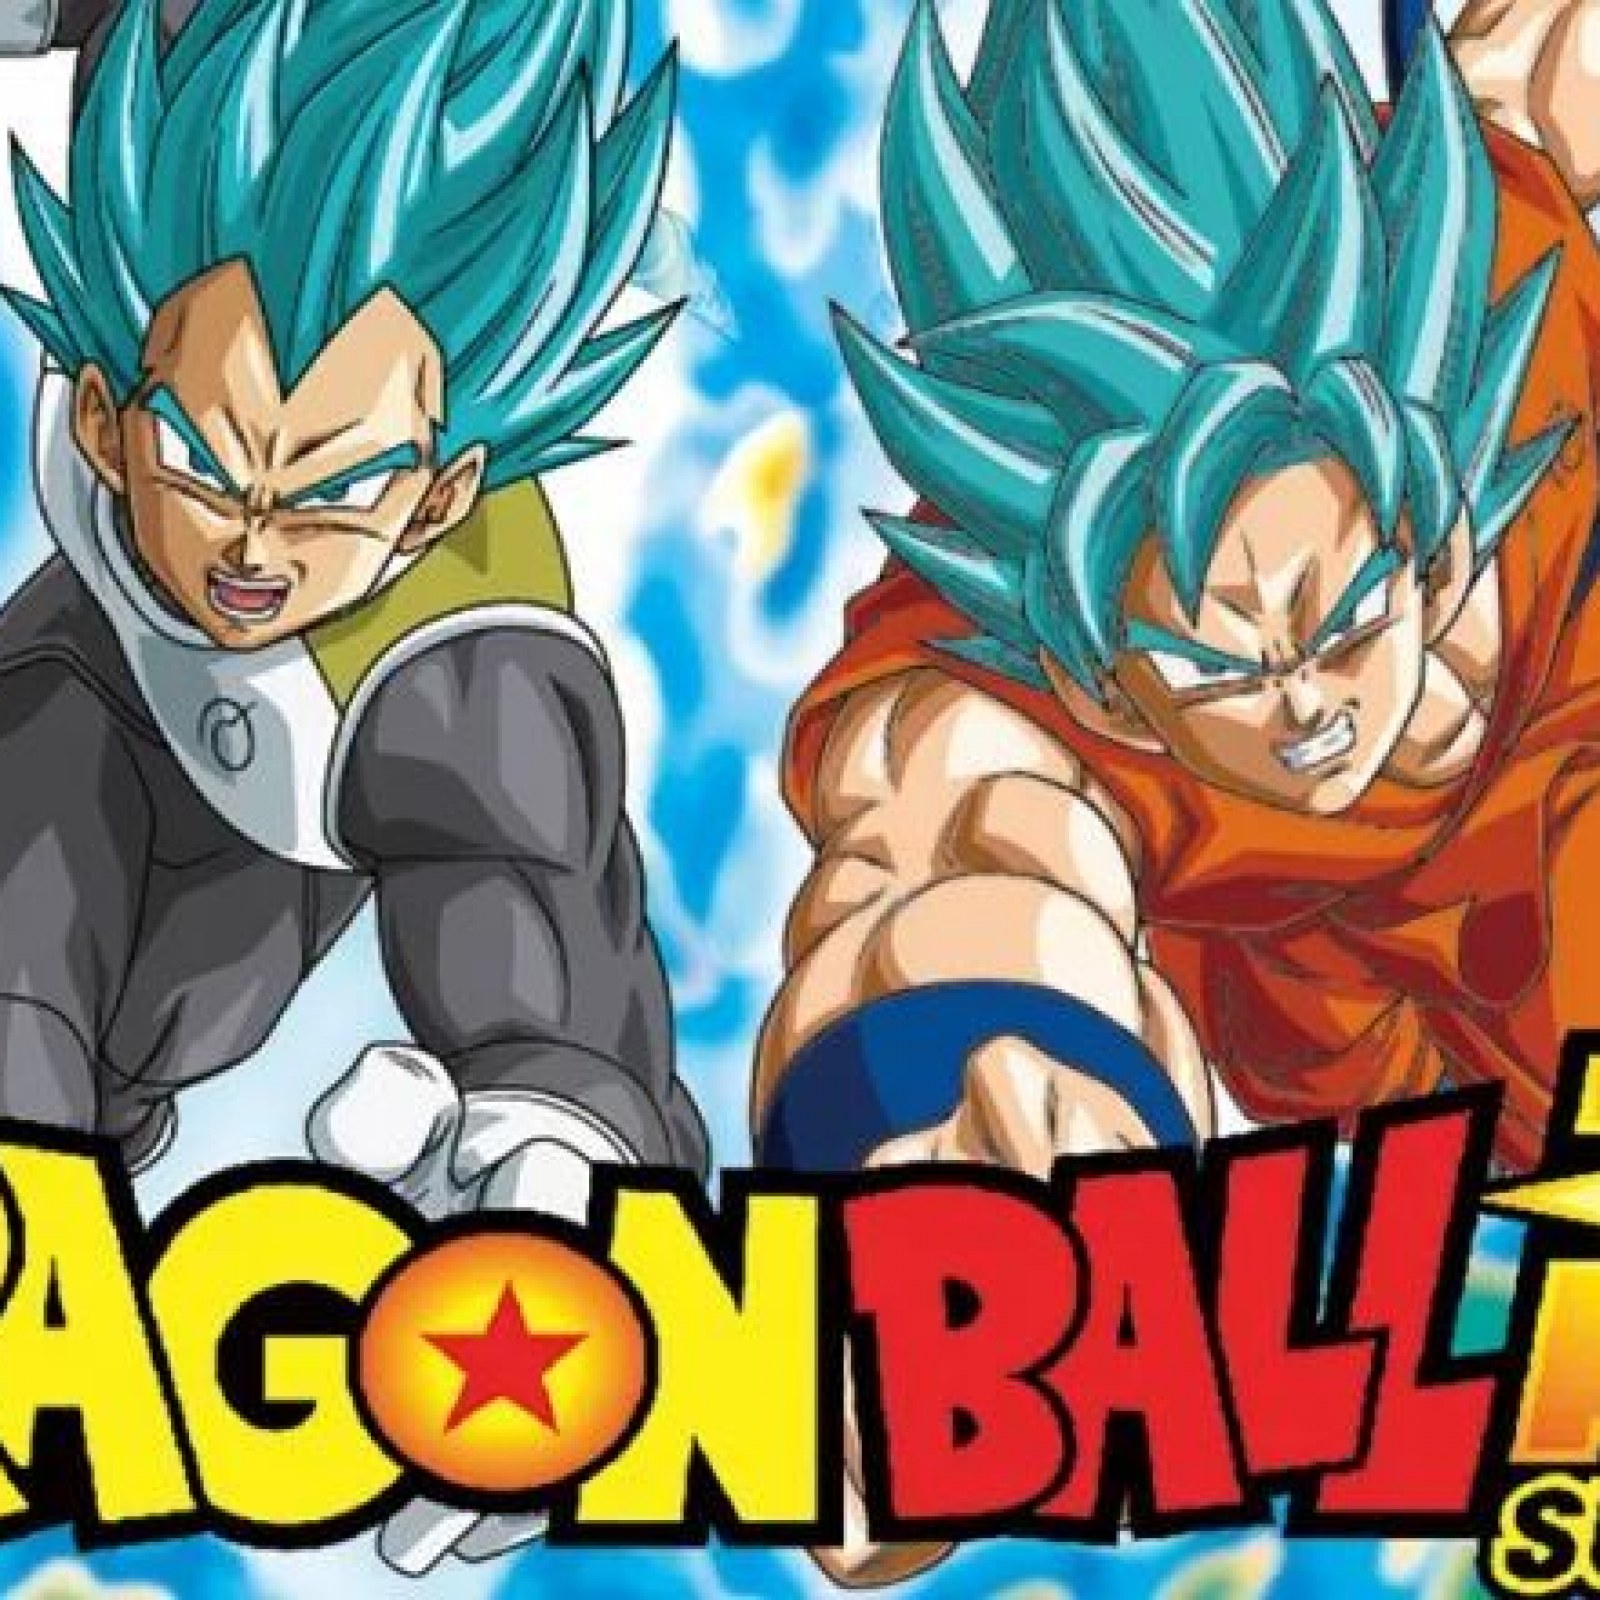 EPISÓDIOS - DRAGON BALL CLÁSSICO  Dragon ball art, Anime dragon ball,  Anime dragon ball super